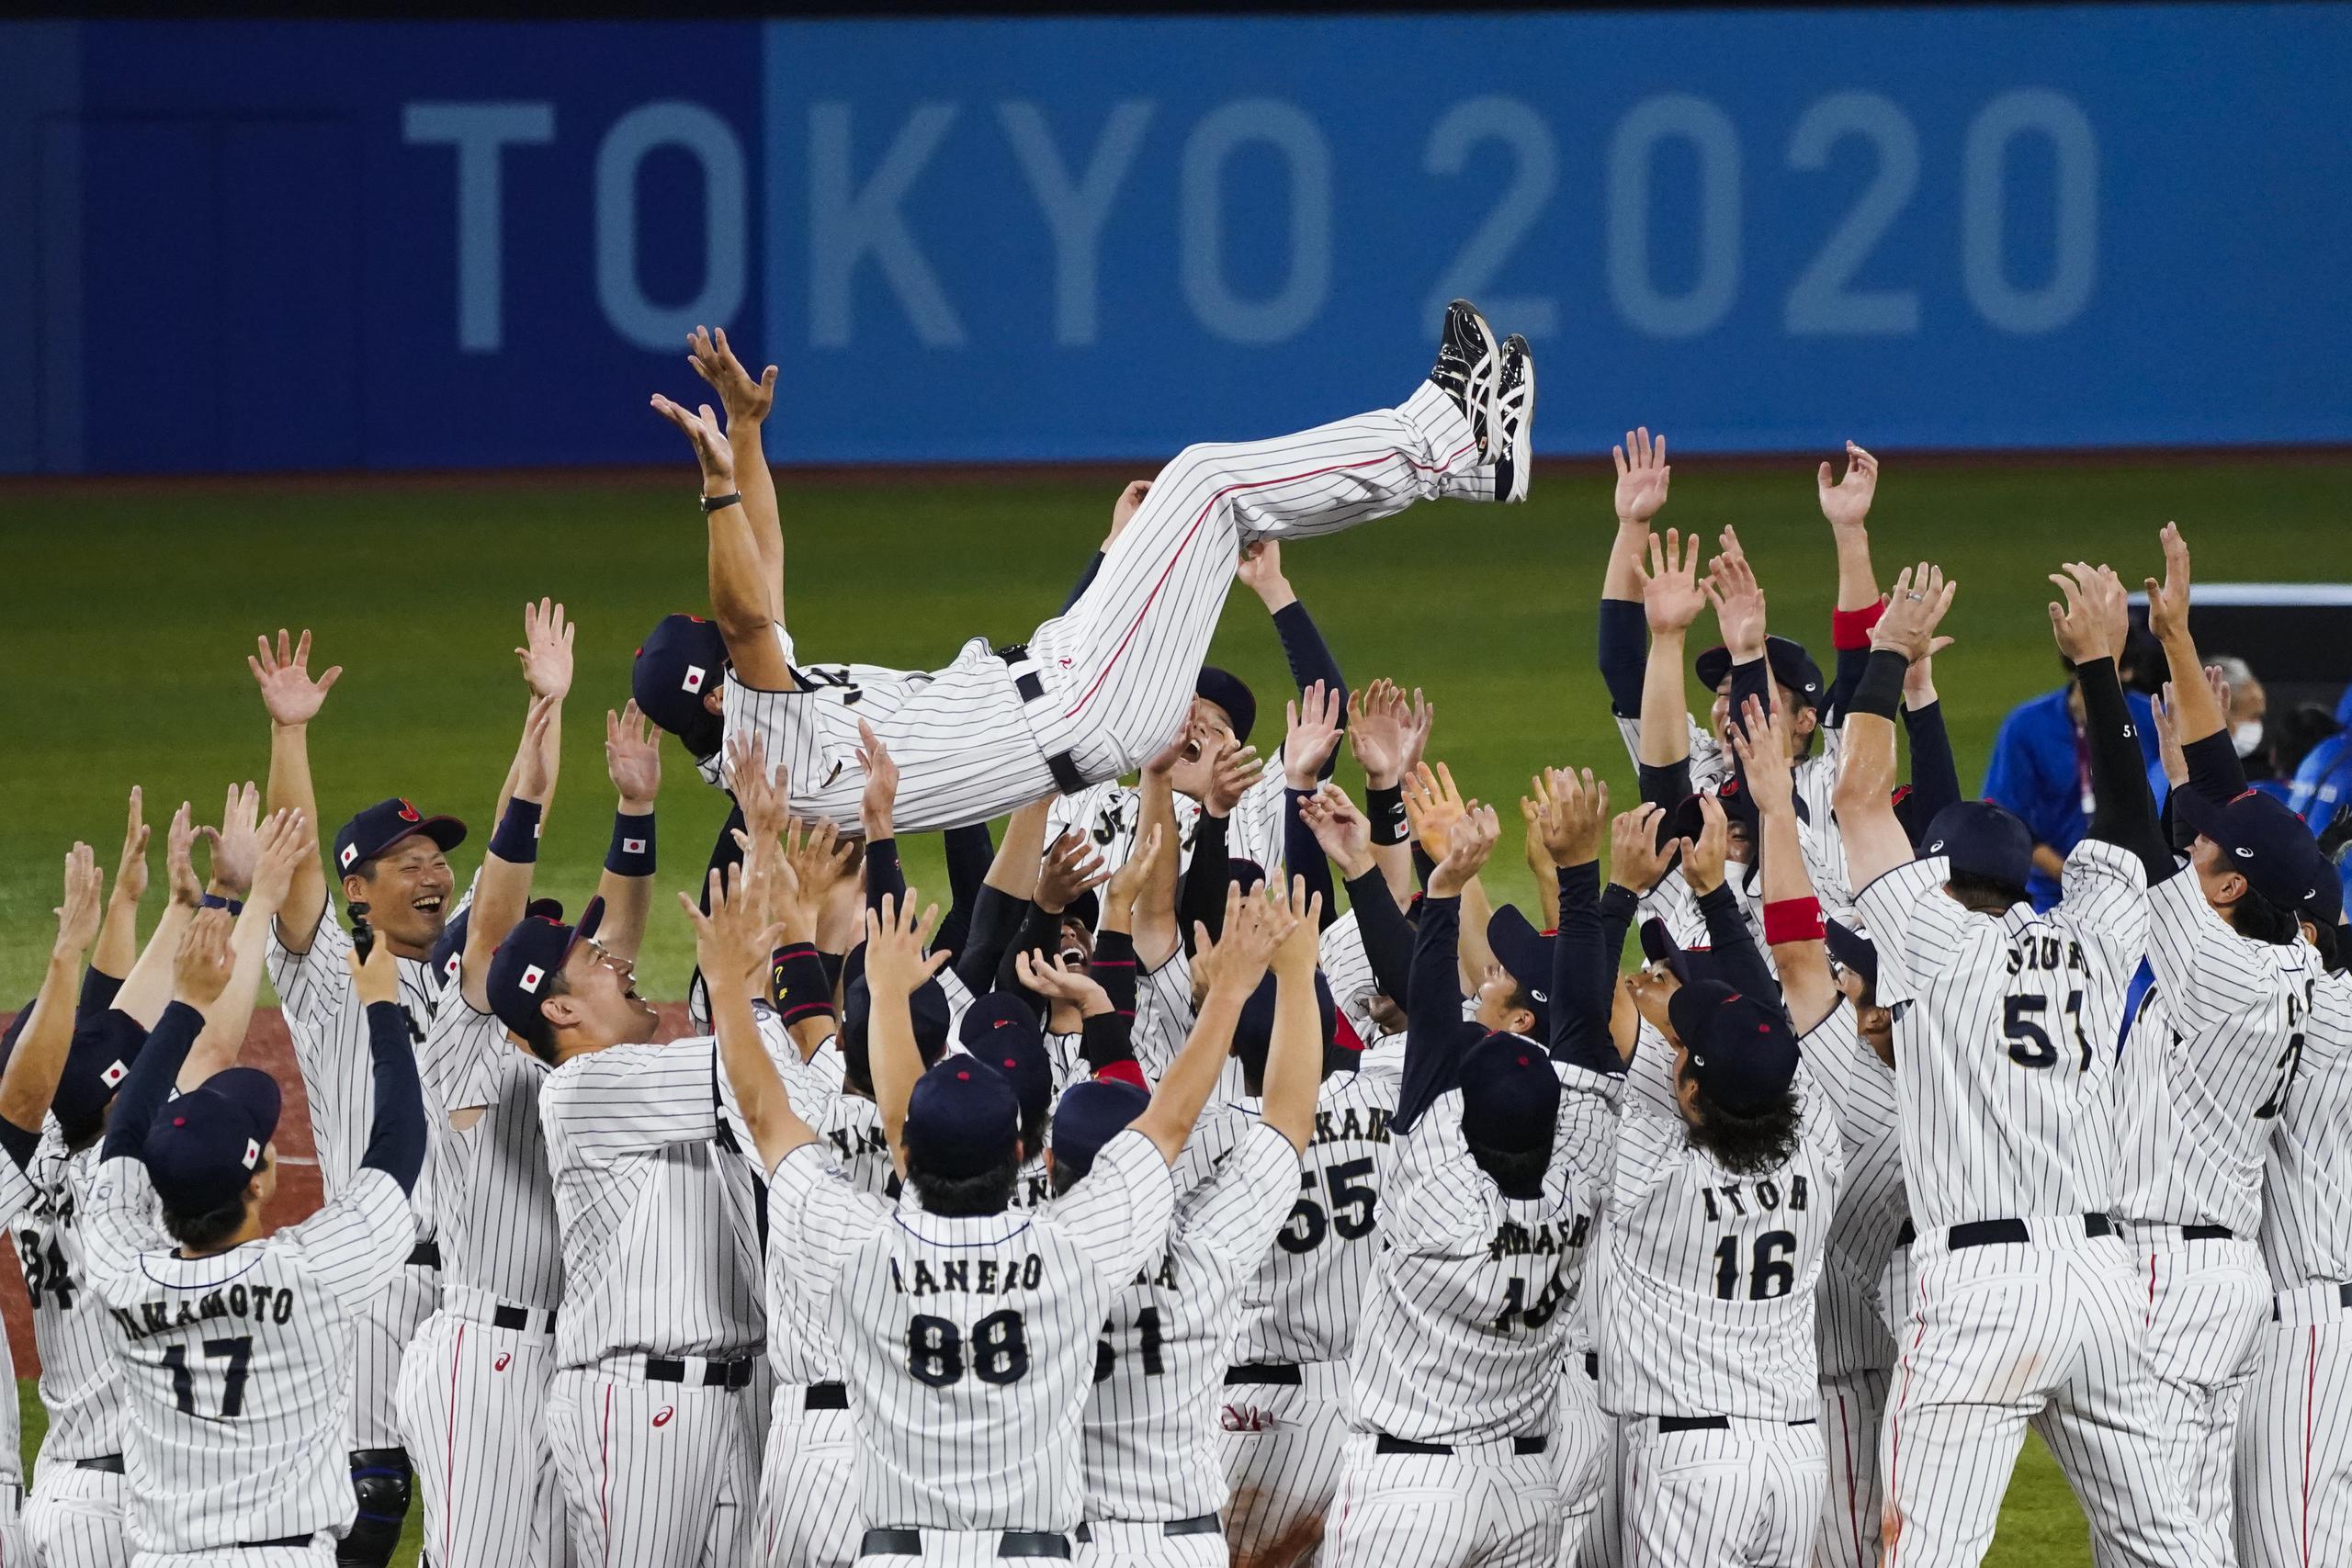 La edición Tokio 2020 en el verano del 2021 contó con el deporte del béisbol, pero no así las dos previas ni la que se avecina en París en el 2024.